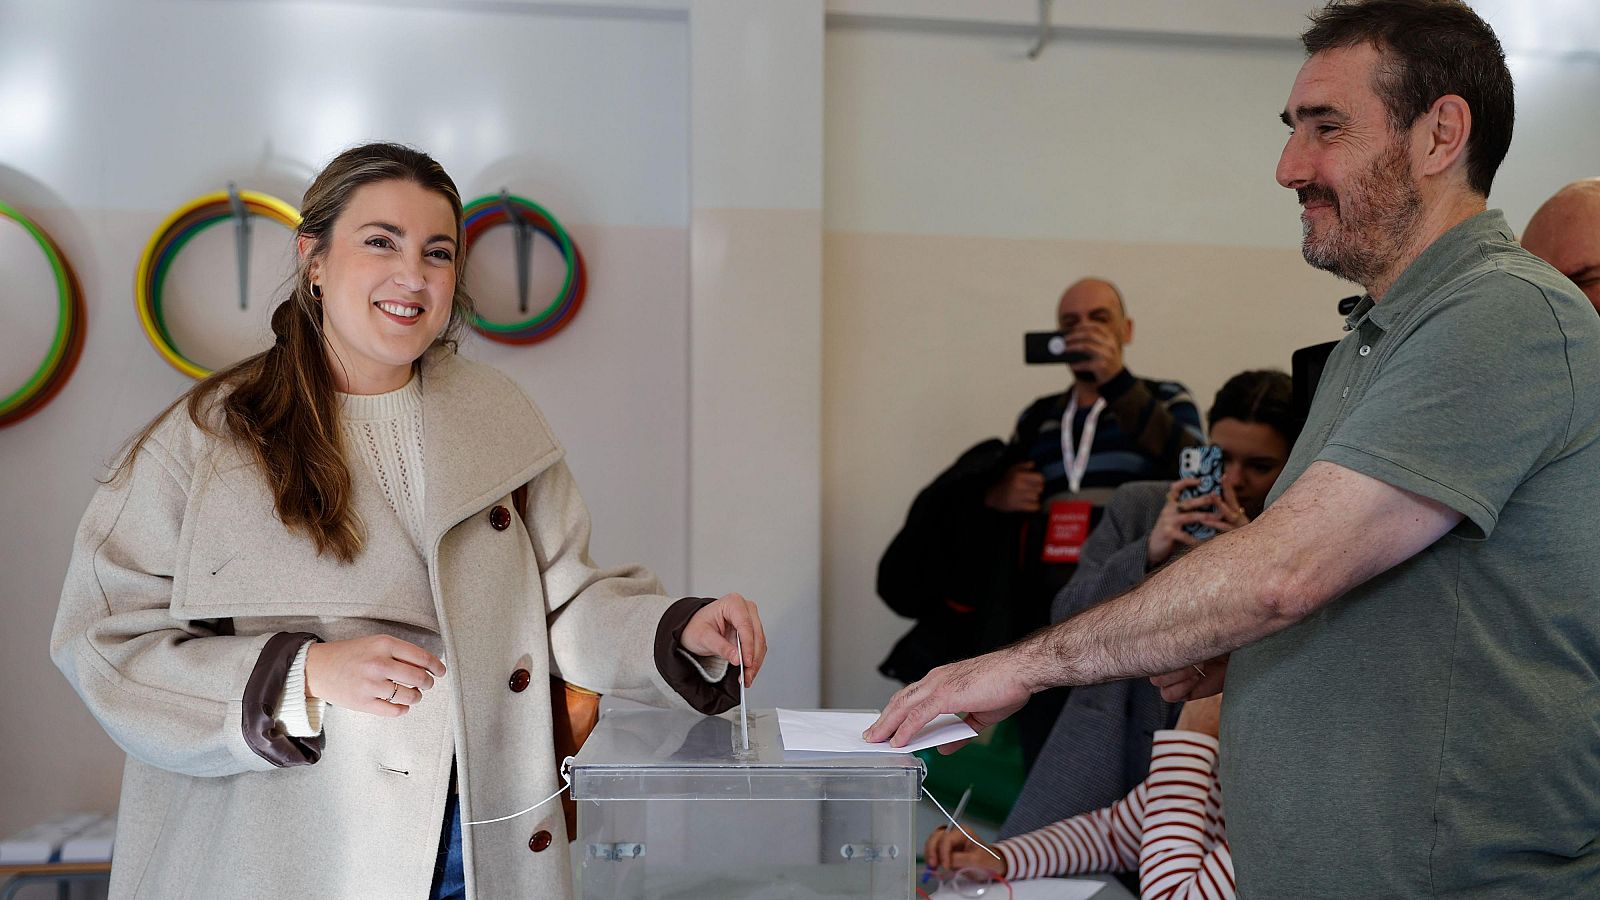 Alba García (Sumar) vota en Bilbao y confía en un "giro a la izquierda"